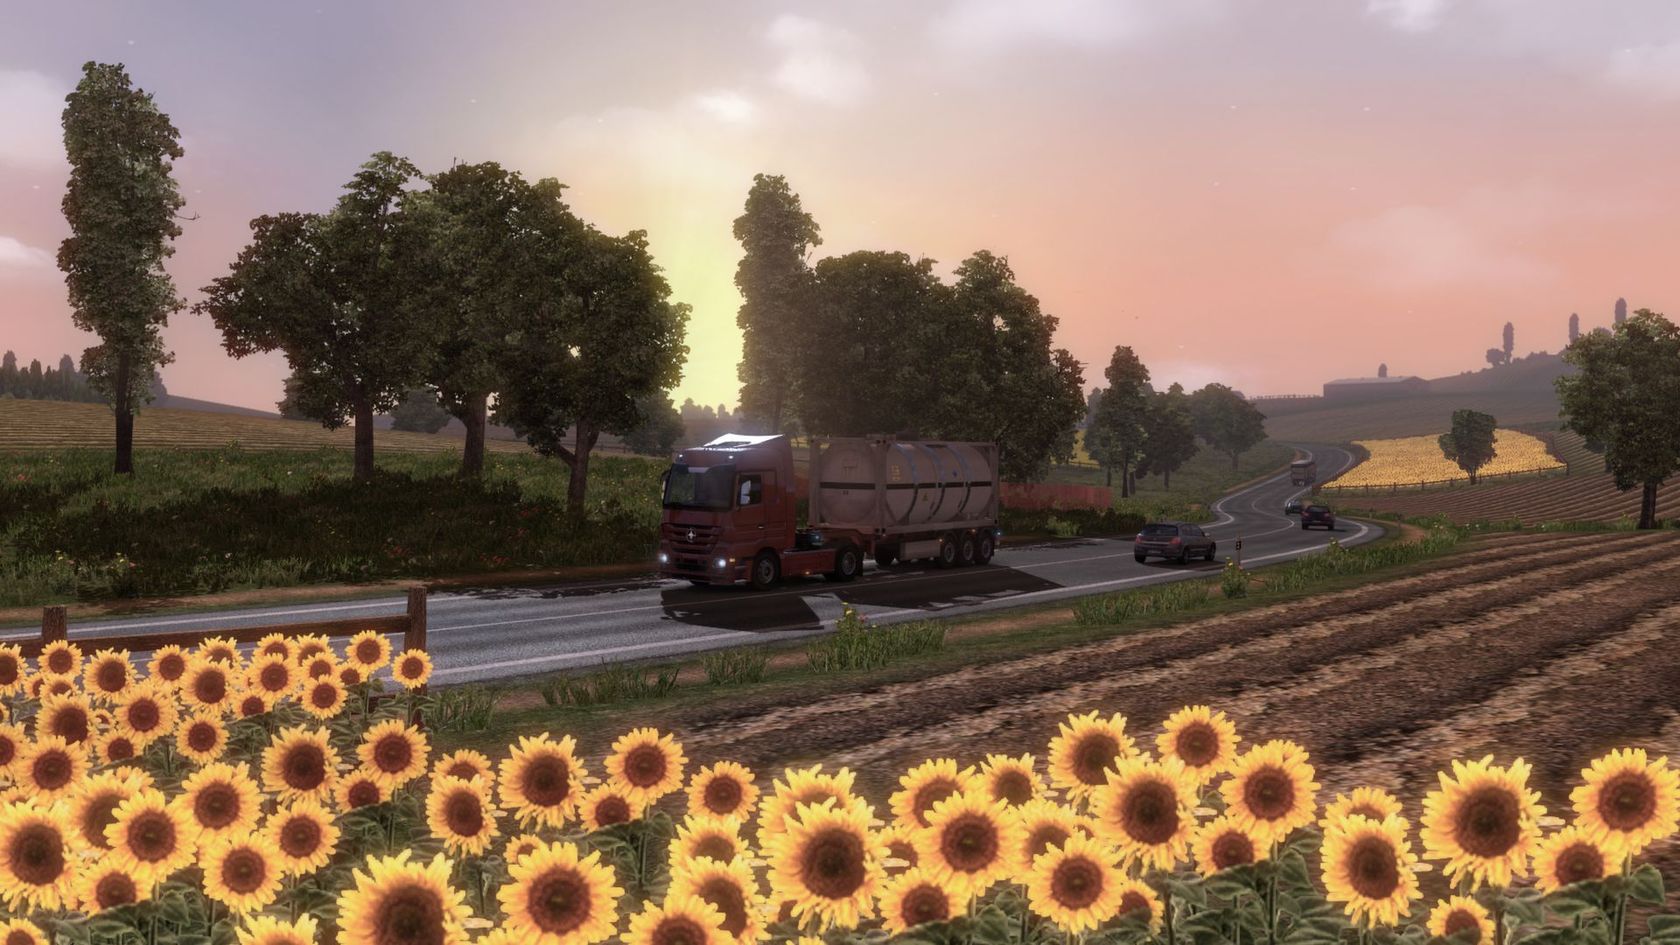 Bewertungen Euro Truck Simulator 2: Going East